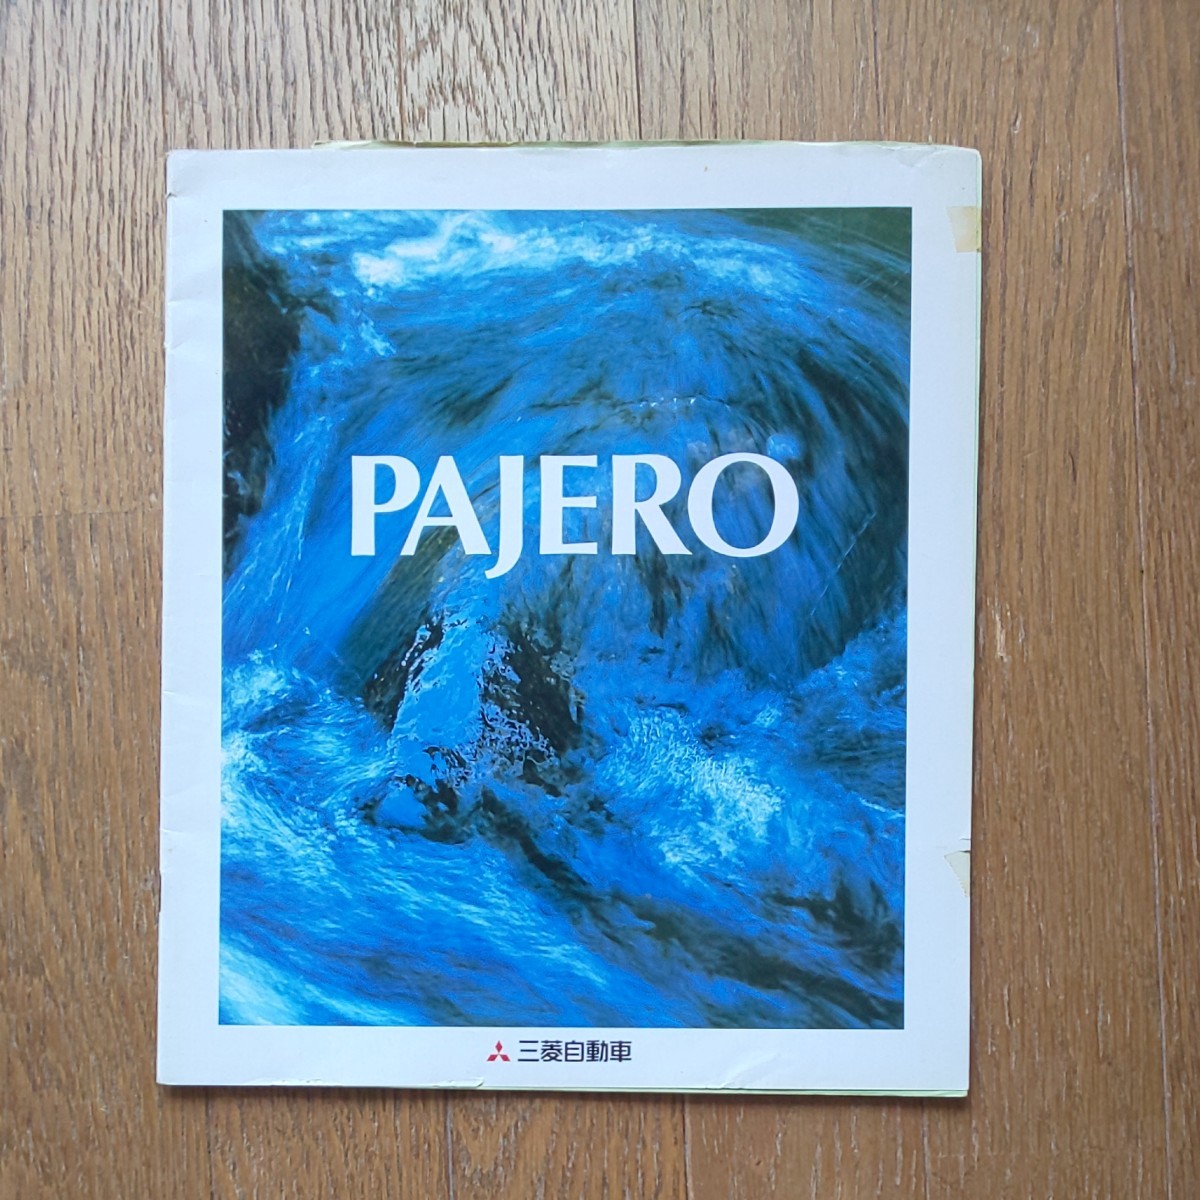  三菱パジェロ MITSUBISHI  PAJERO カタログ